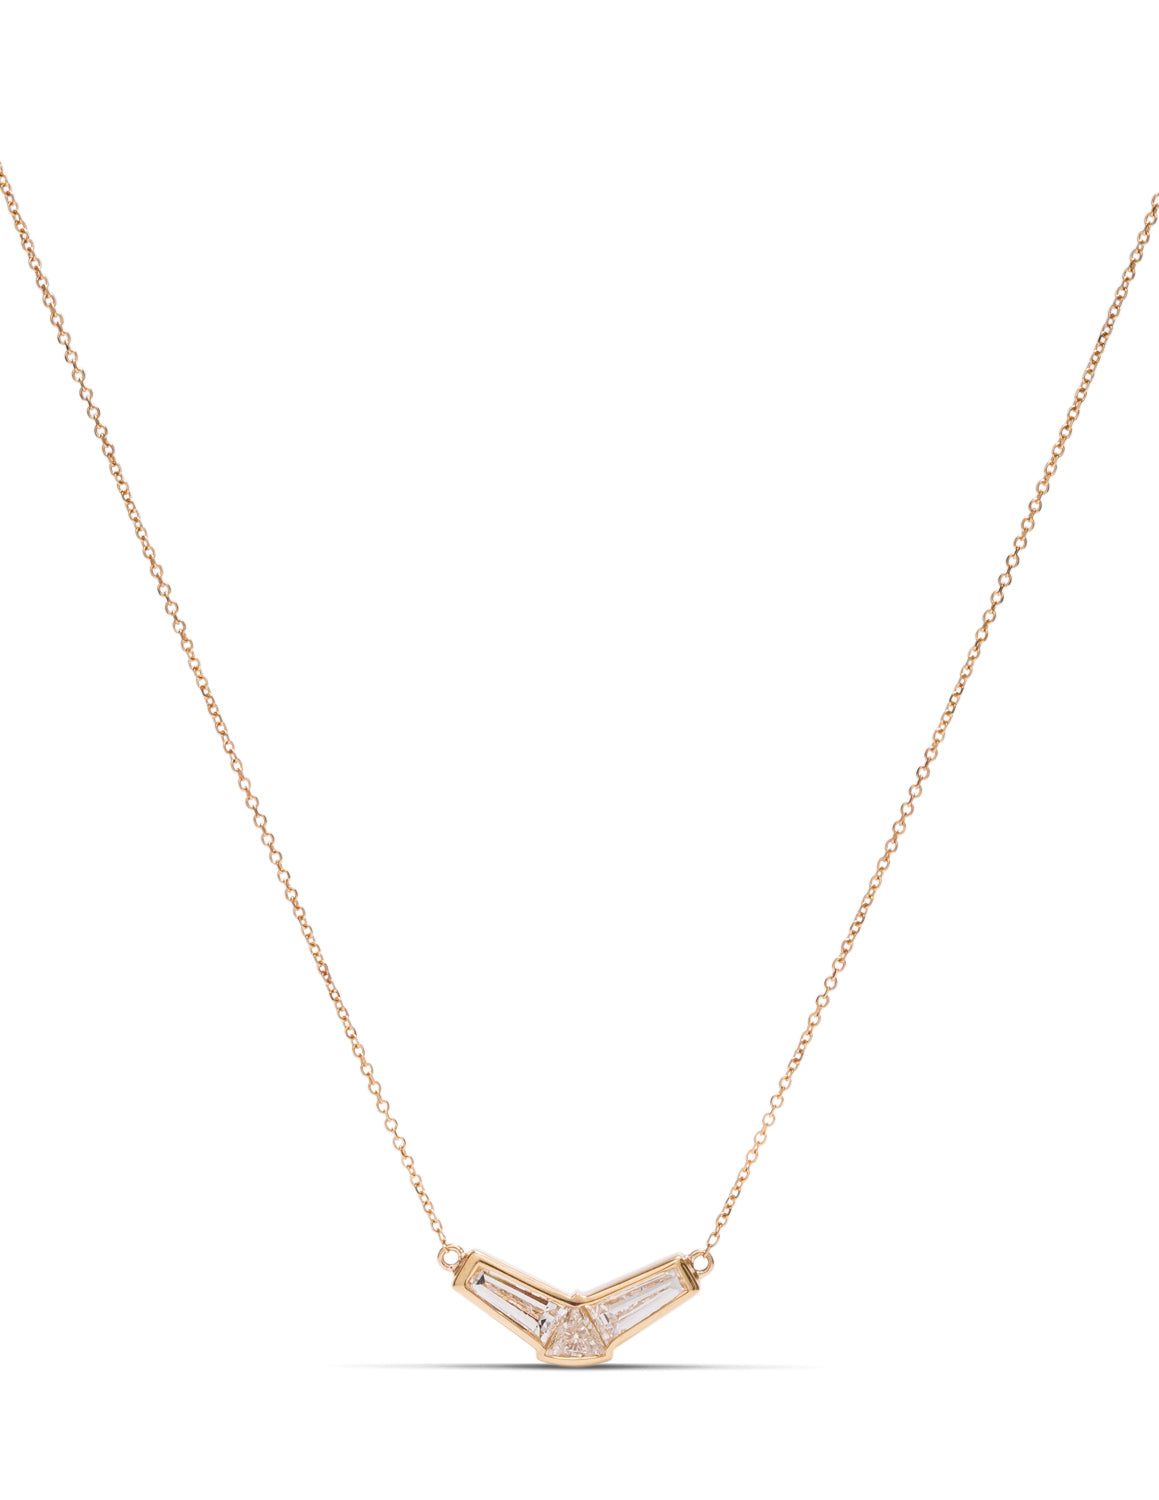 Fancy Shape Diamond Necklace - Charles Koll Jewellers